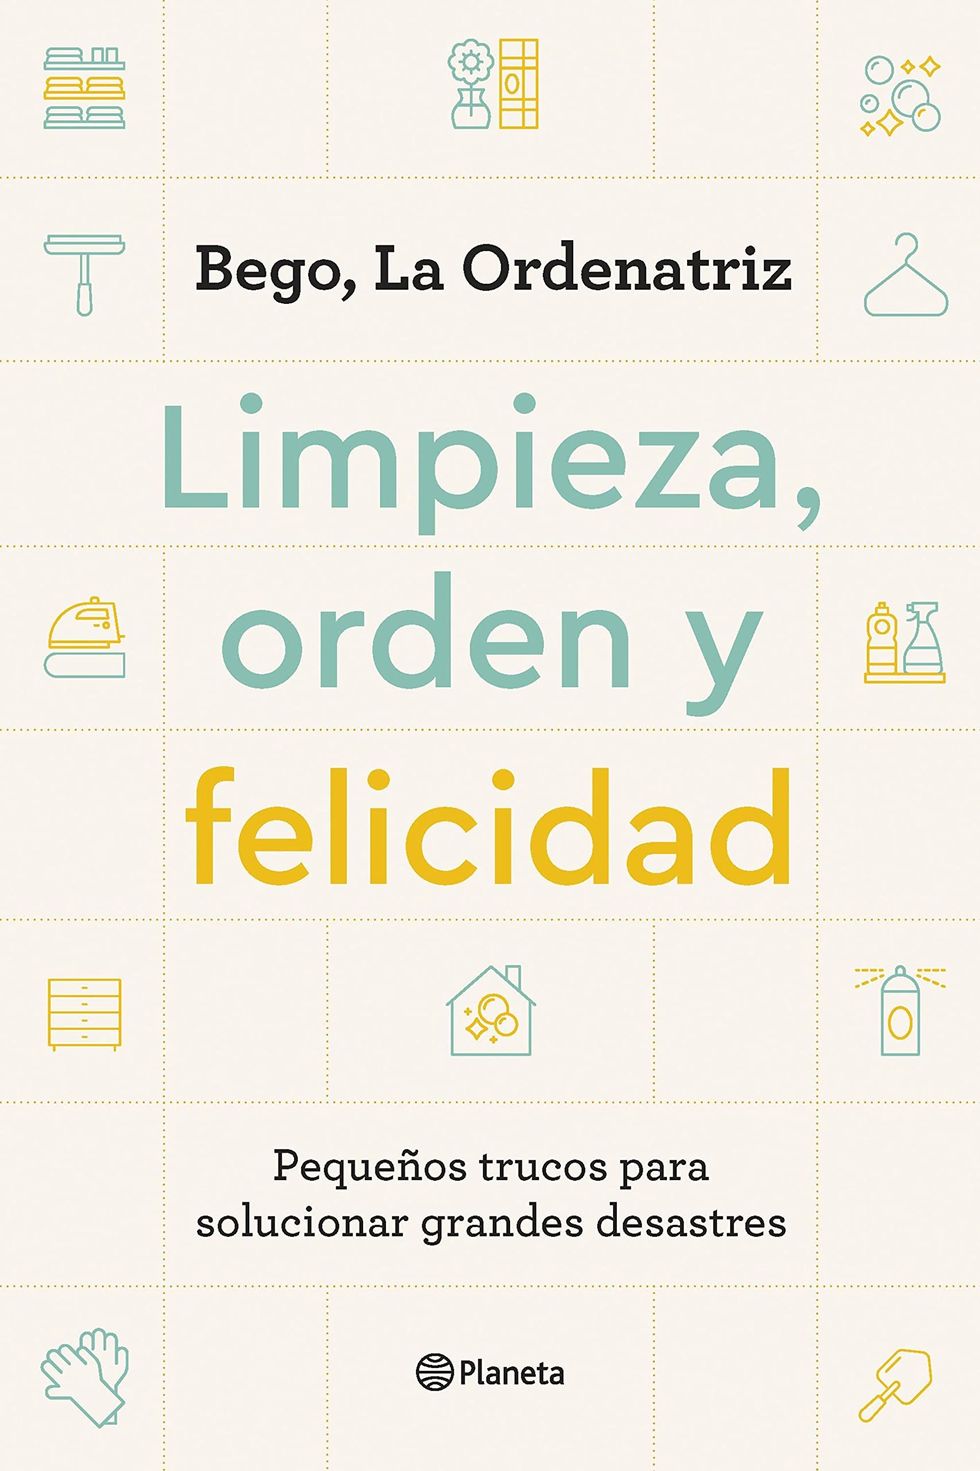 Audio: Entrevista a Bego La Ordenatriz sobre su nuevo libro “Limpieza,  orden y felicidad”